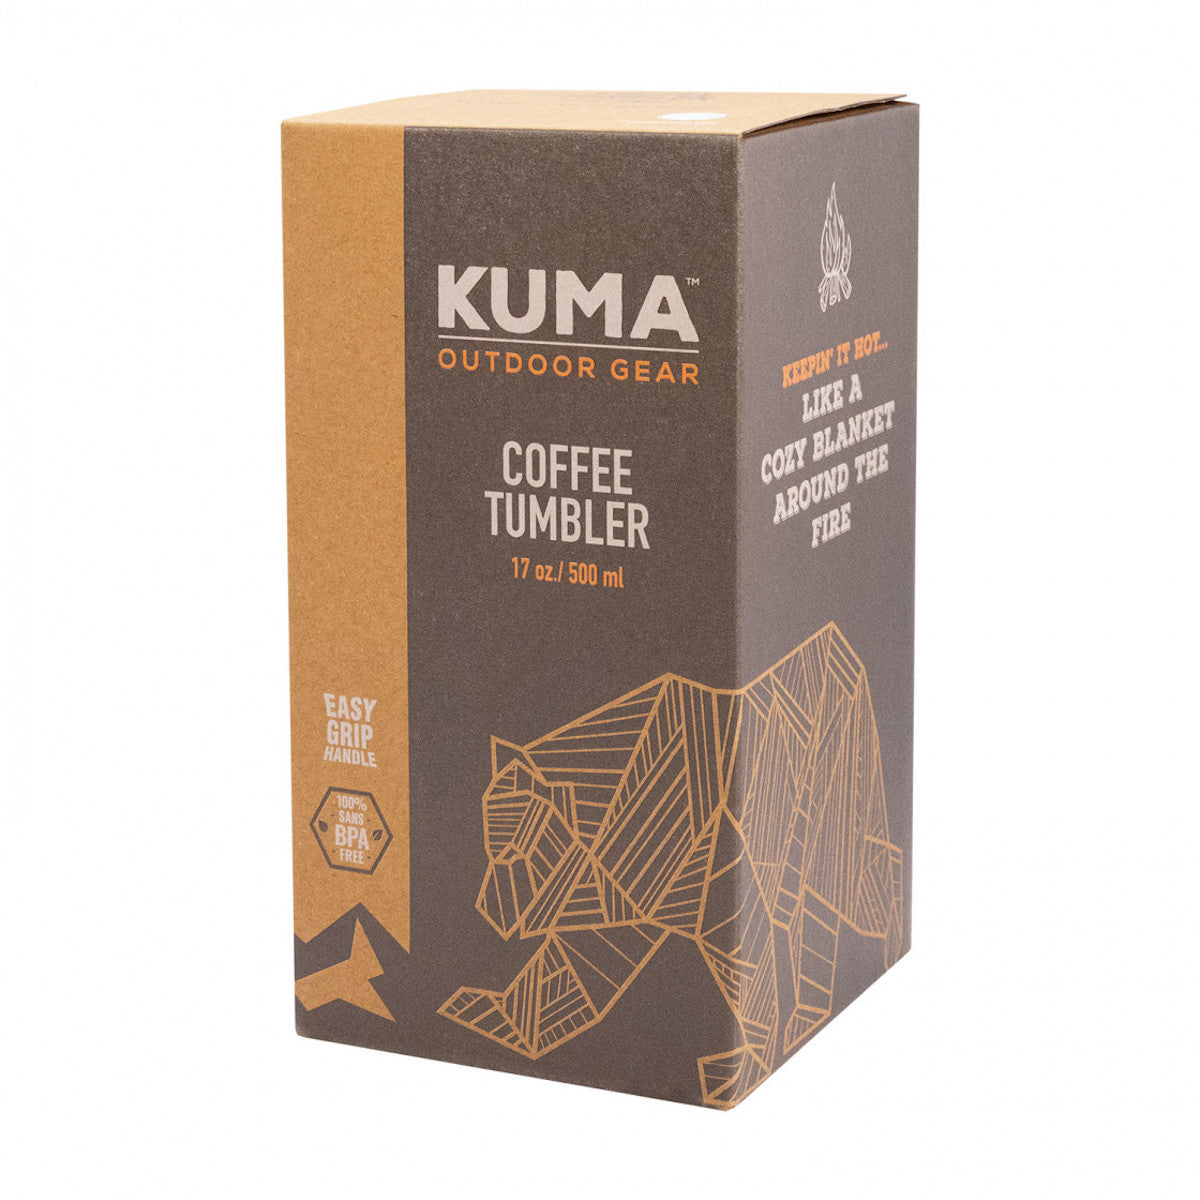 Kuma Coffee Tumbler - White